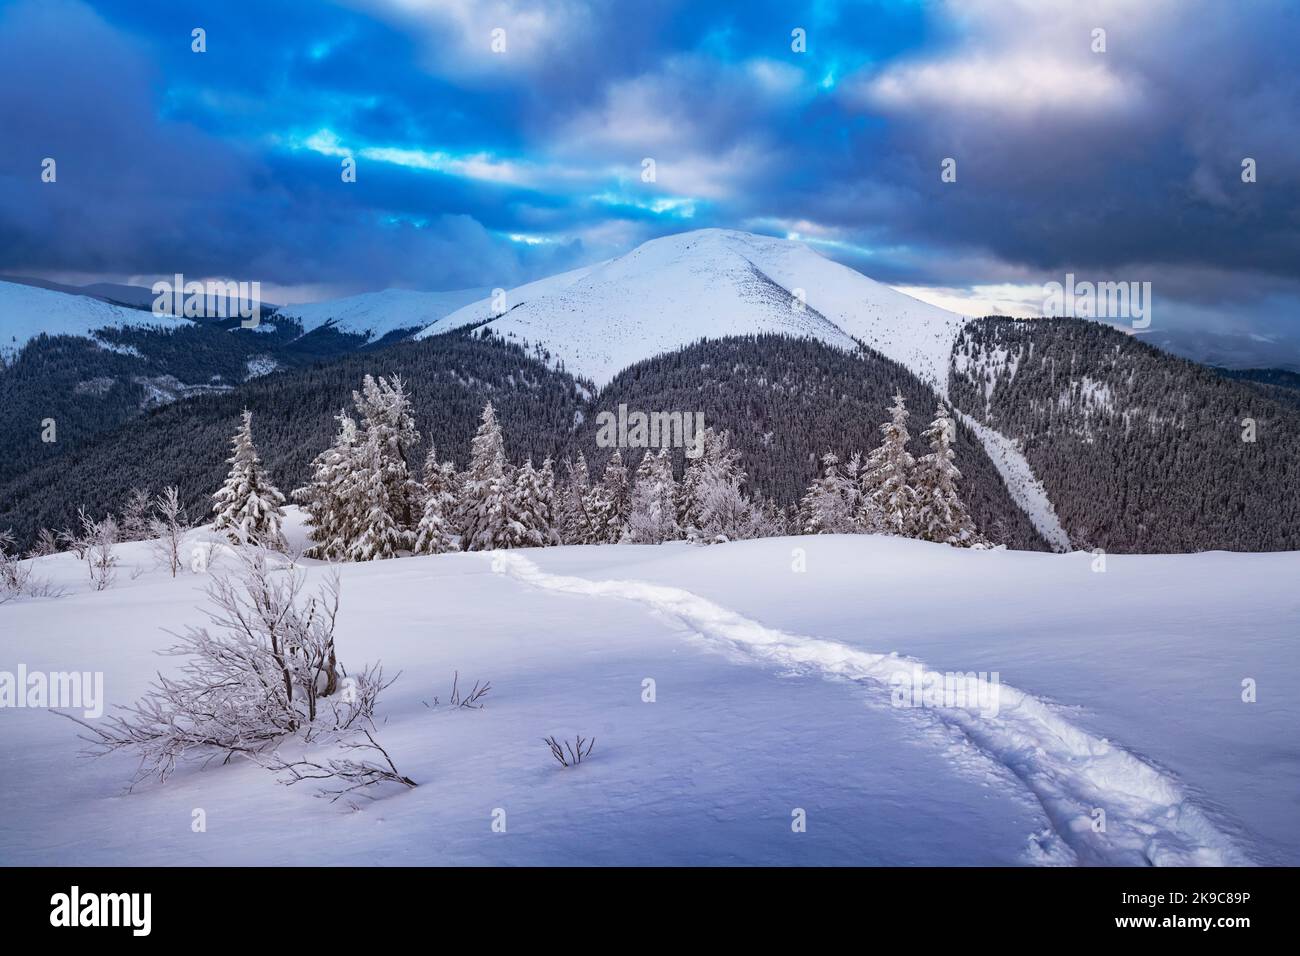 Fantastisches Winterlandschaftspanorama mit verschneiten Bäumen und verschneiten Gipfeln. Karpaten, Ukraine. Weihnachten Urlaub Hintergrund. Landschaftsfotografie Stockfoto